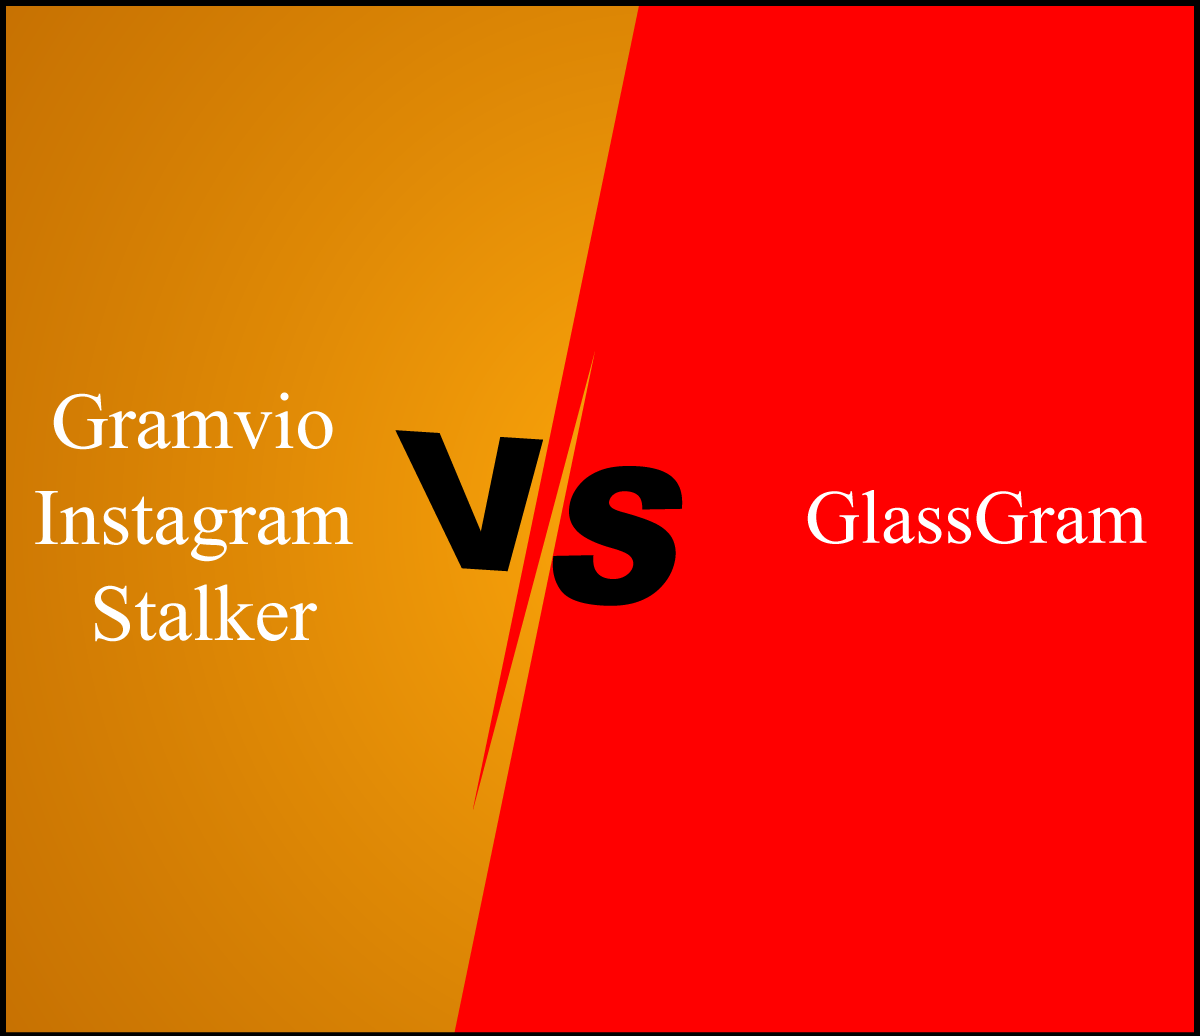 Gramvio Instagram Stalker VS GlassGram